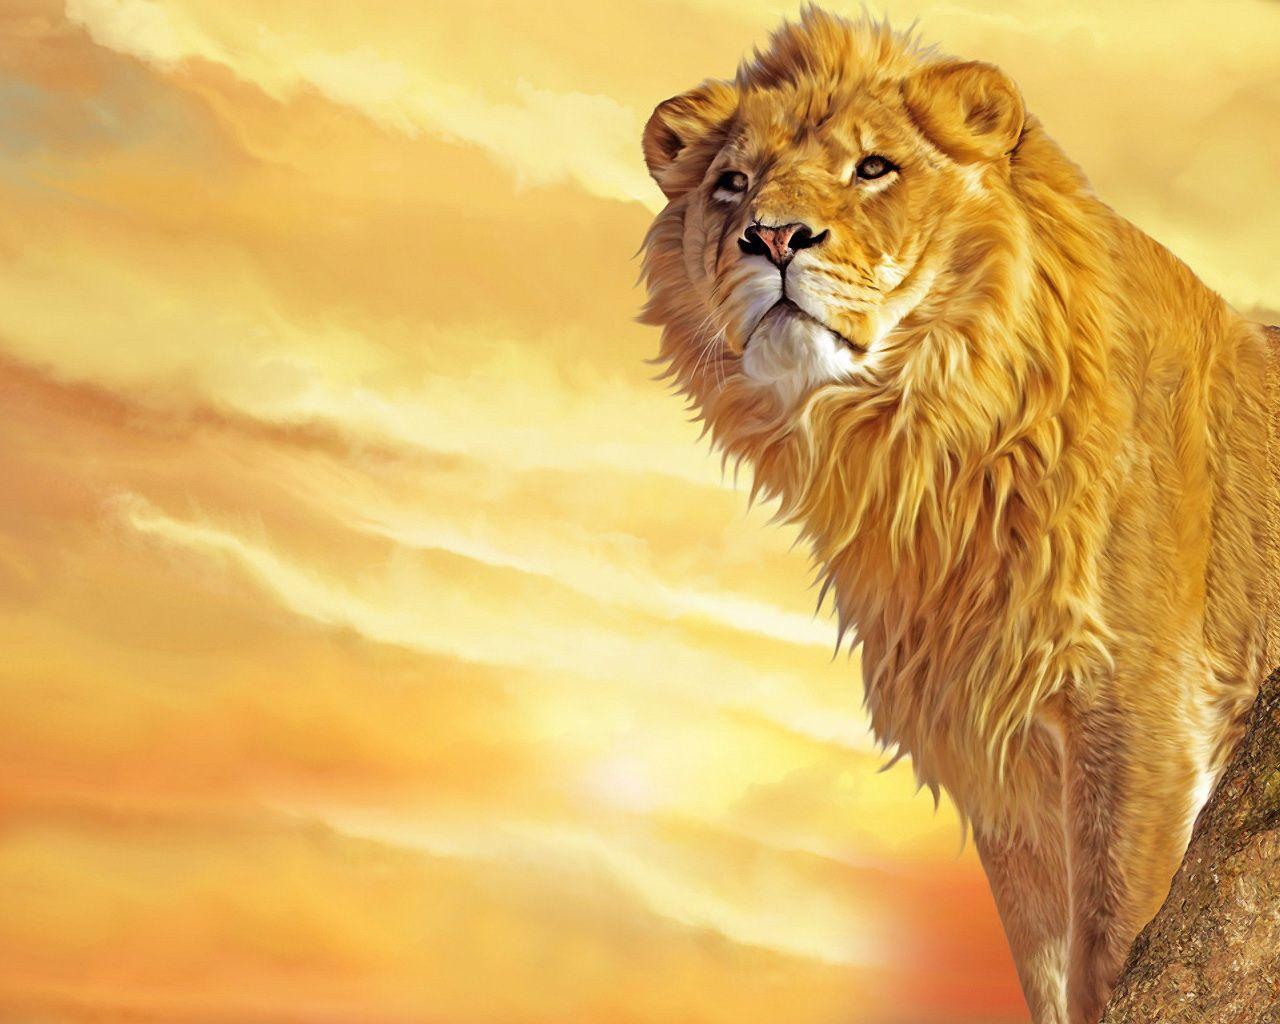 Lion Wallpaper Downloadpetite Soumiselylye